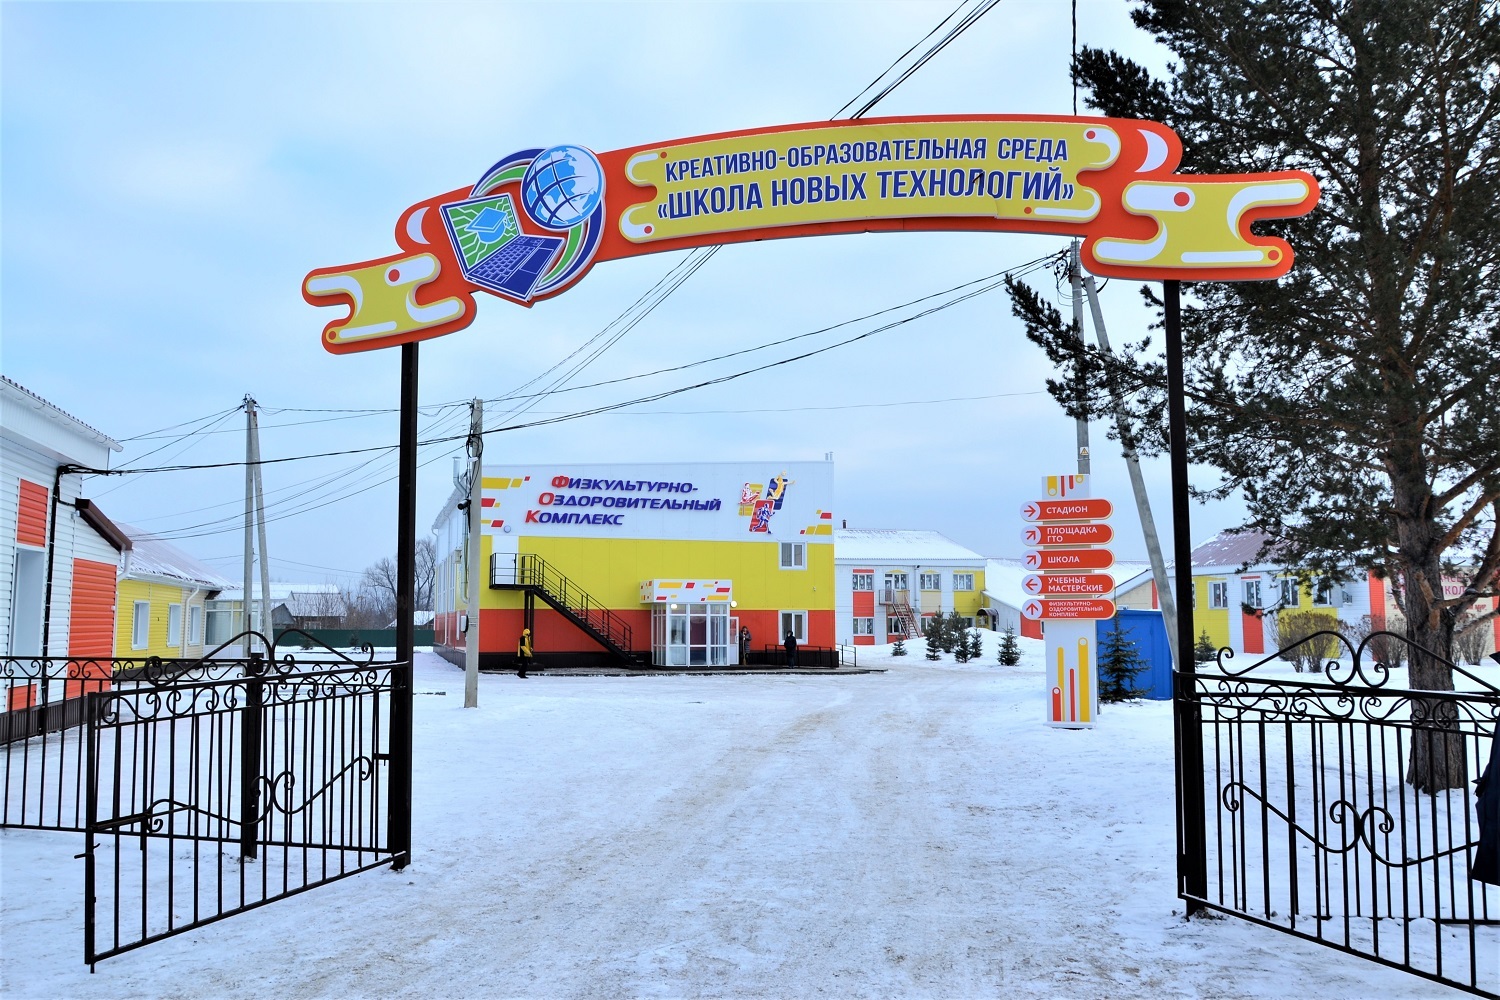 В Прокопьевском районе открылся физкультурно-оздоровительный комплекс при поддержке угольщиков АО Стройсервис. Стройсервис